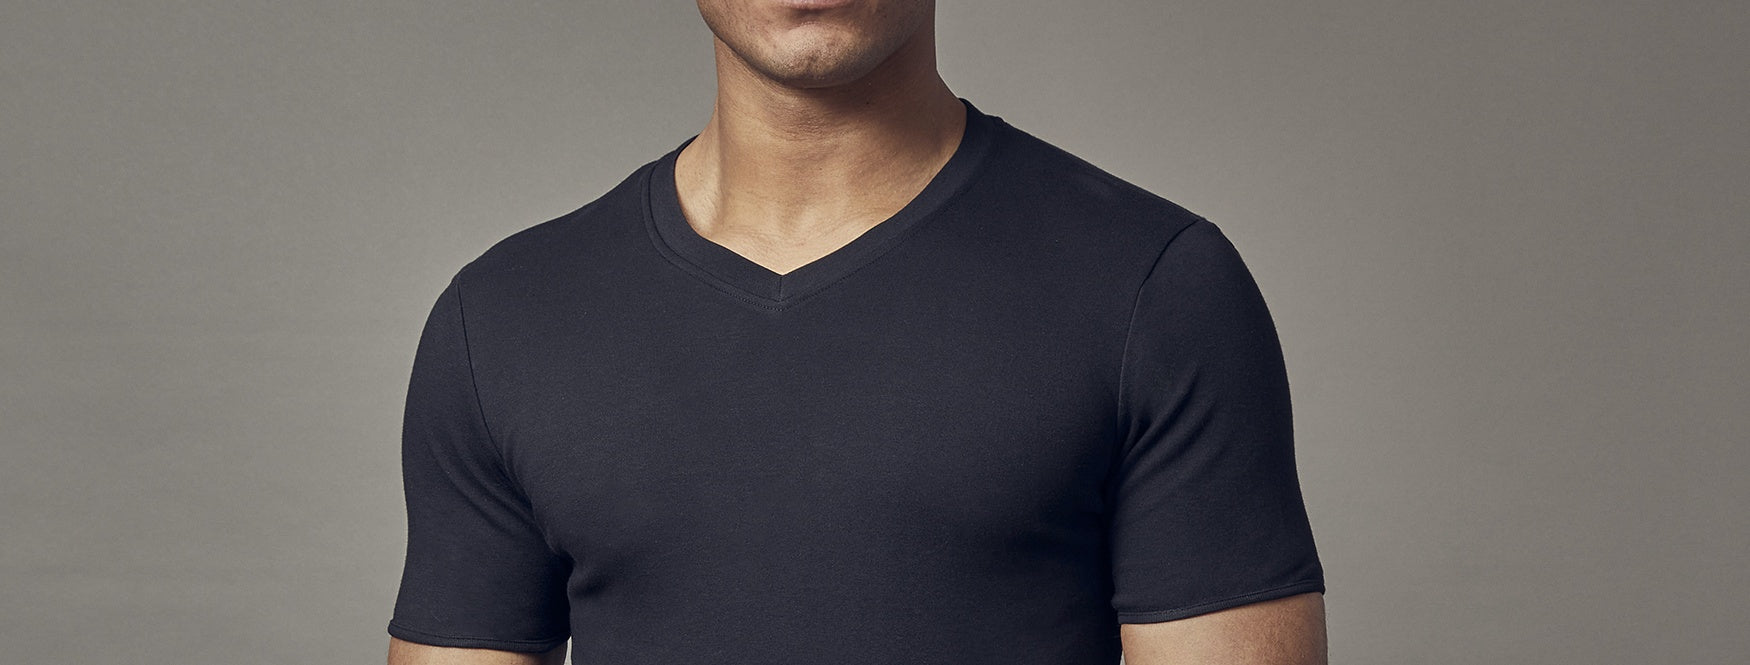 Men's V Neck T-Shirt Summer Black White Short Sleeve Slim Fit Solid Color  Tops